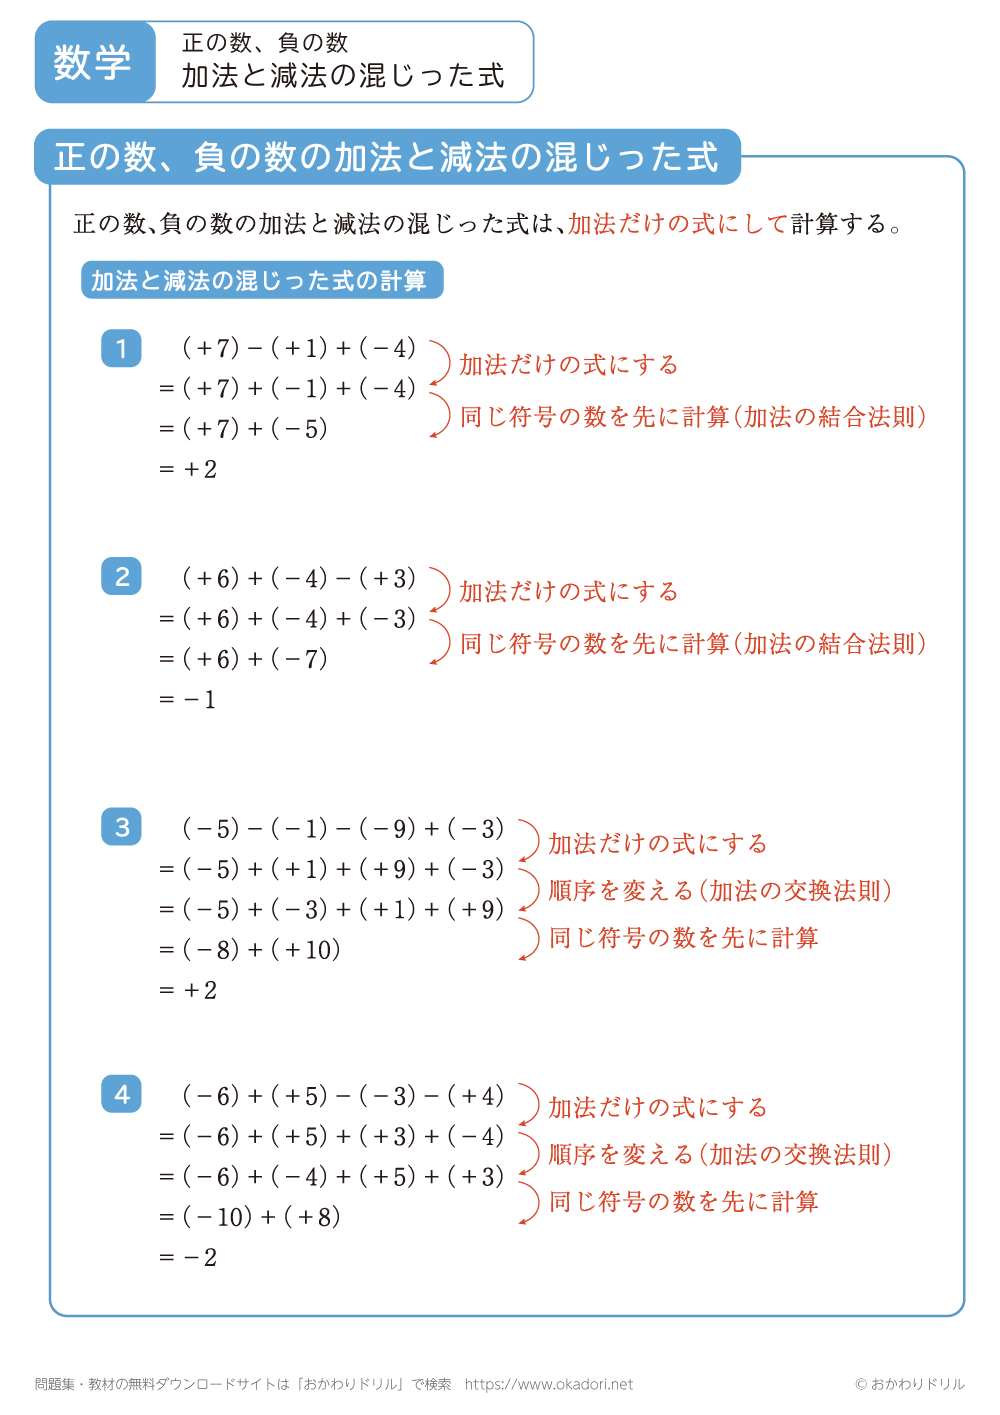 正の数・負の数の加法と減法の混じった式1